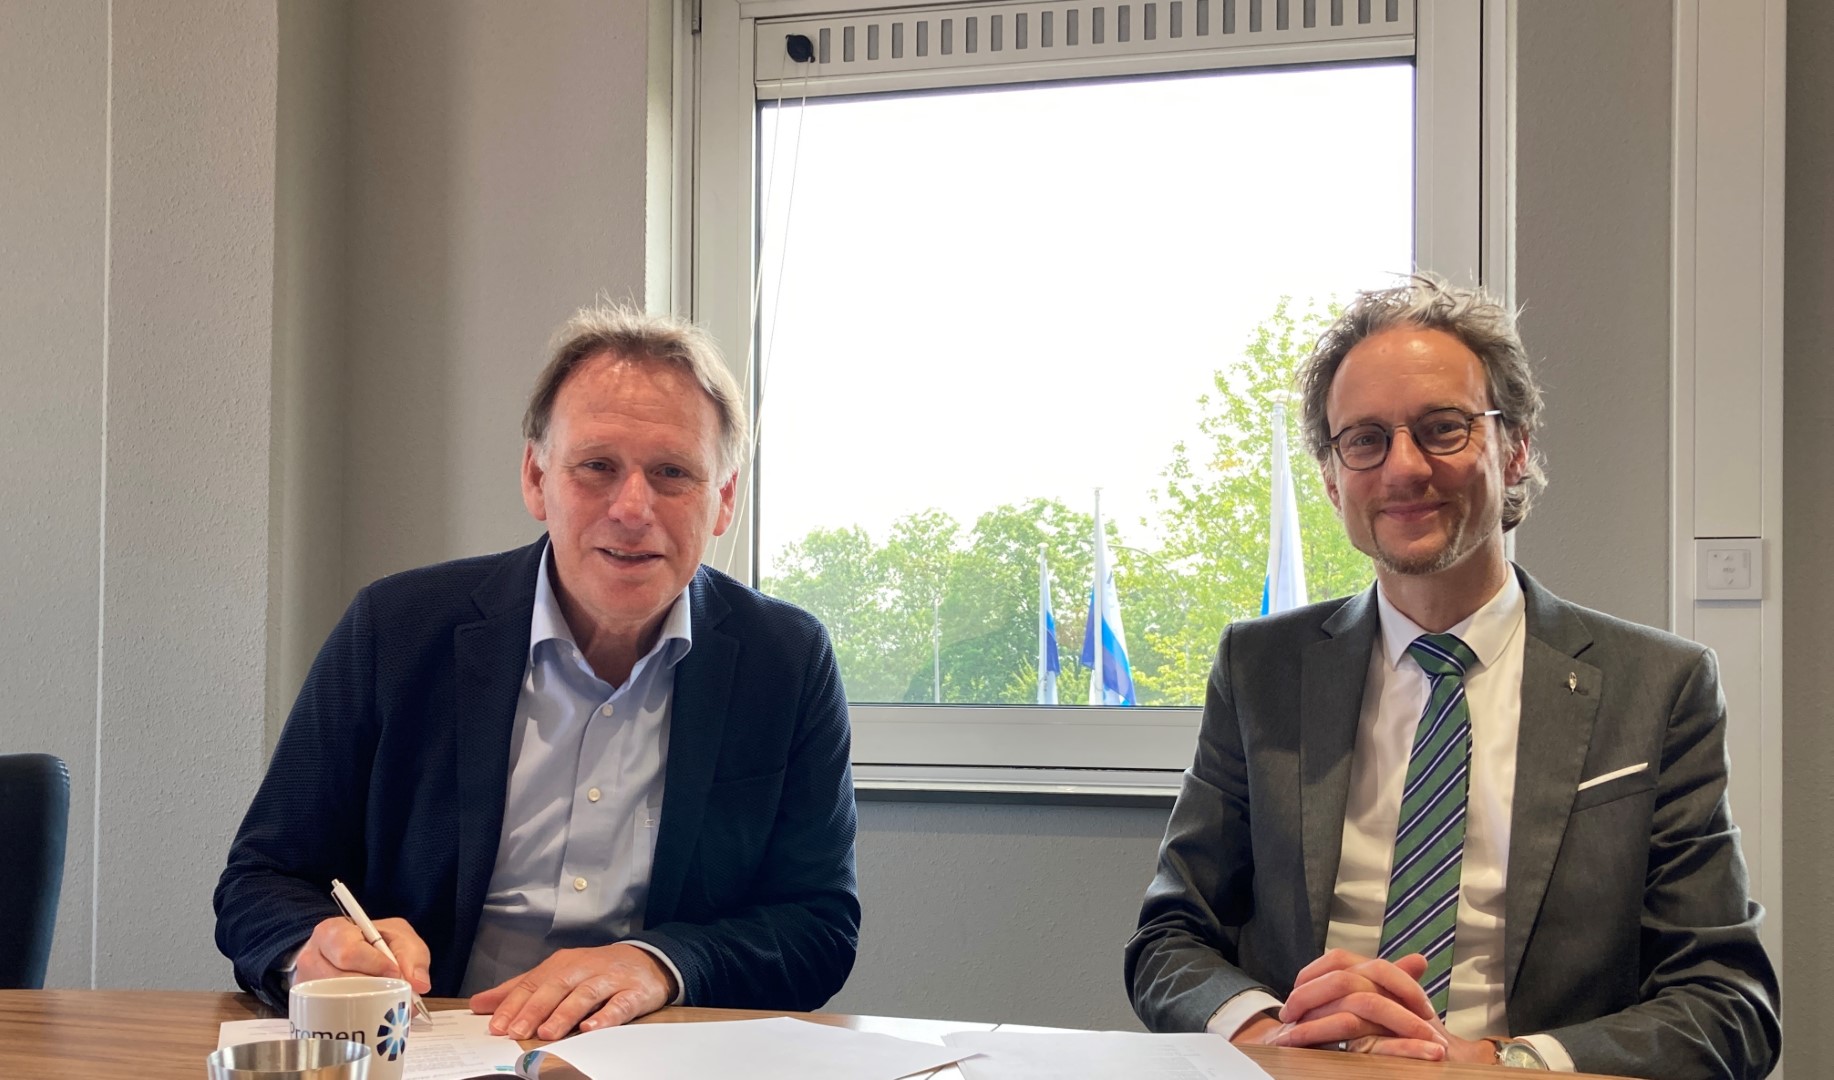 Op de foto: Frank Rossel (directeur Promen) en Thierry van Vugt (voorzitter streekarchief) ondertekenen de dienstverleningsovereenkomst. Foto: T. Pranger